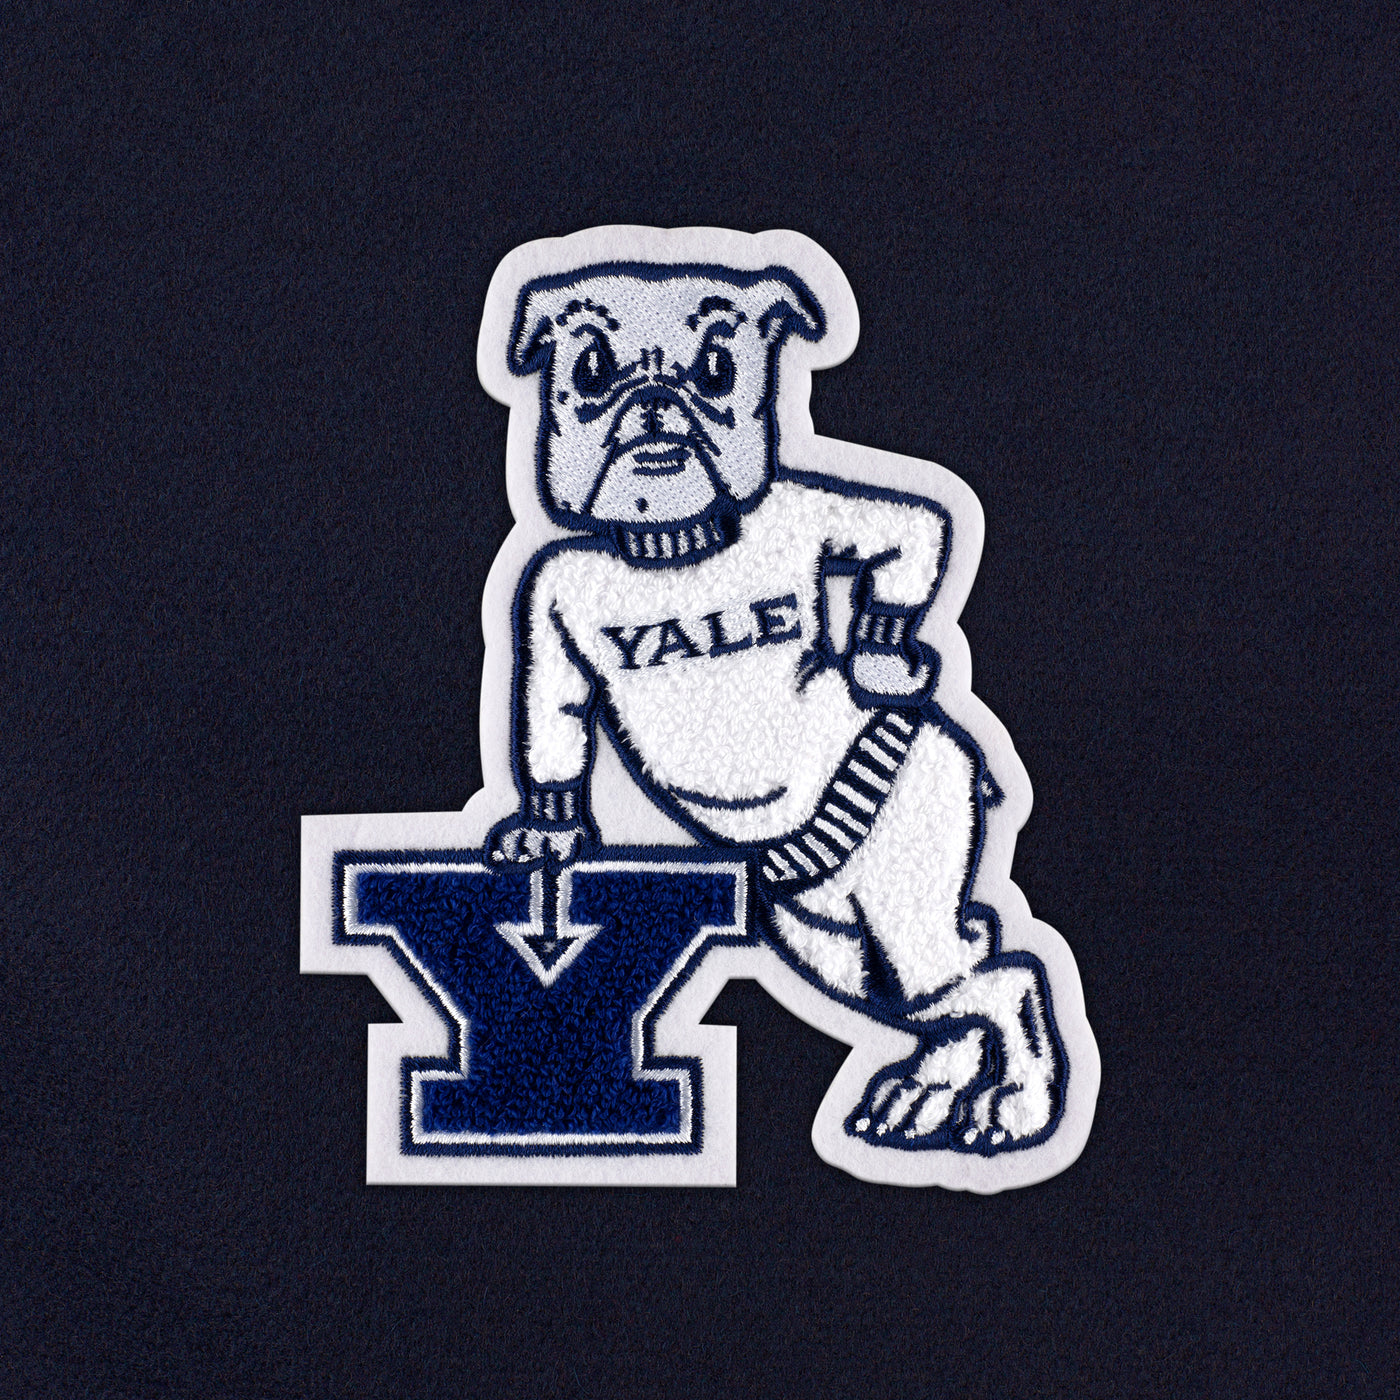 Yale Bulldogs "Dan the Bulldog" Weekender Duffle Bag